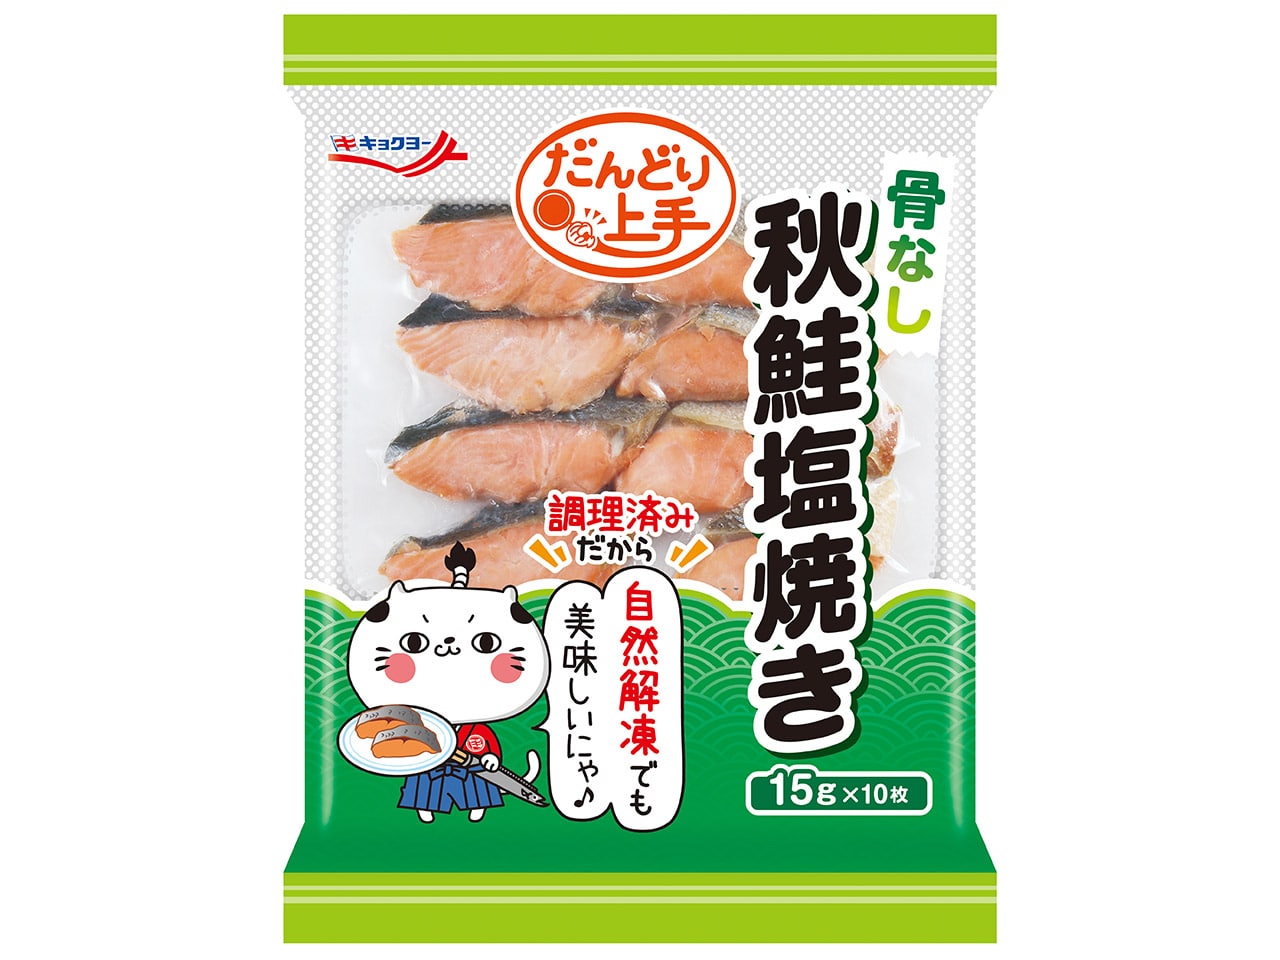 秋鮭塩焼き(骨なし) 15g×10枚【10袋セット】